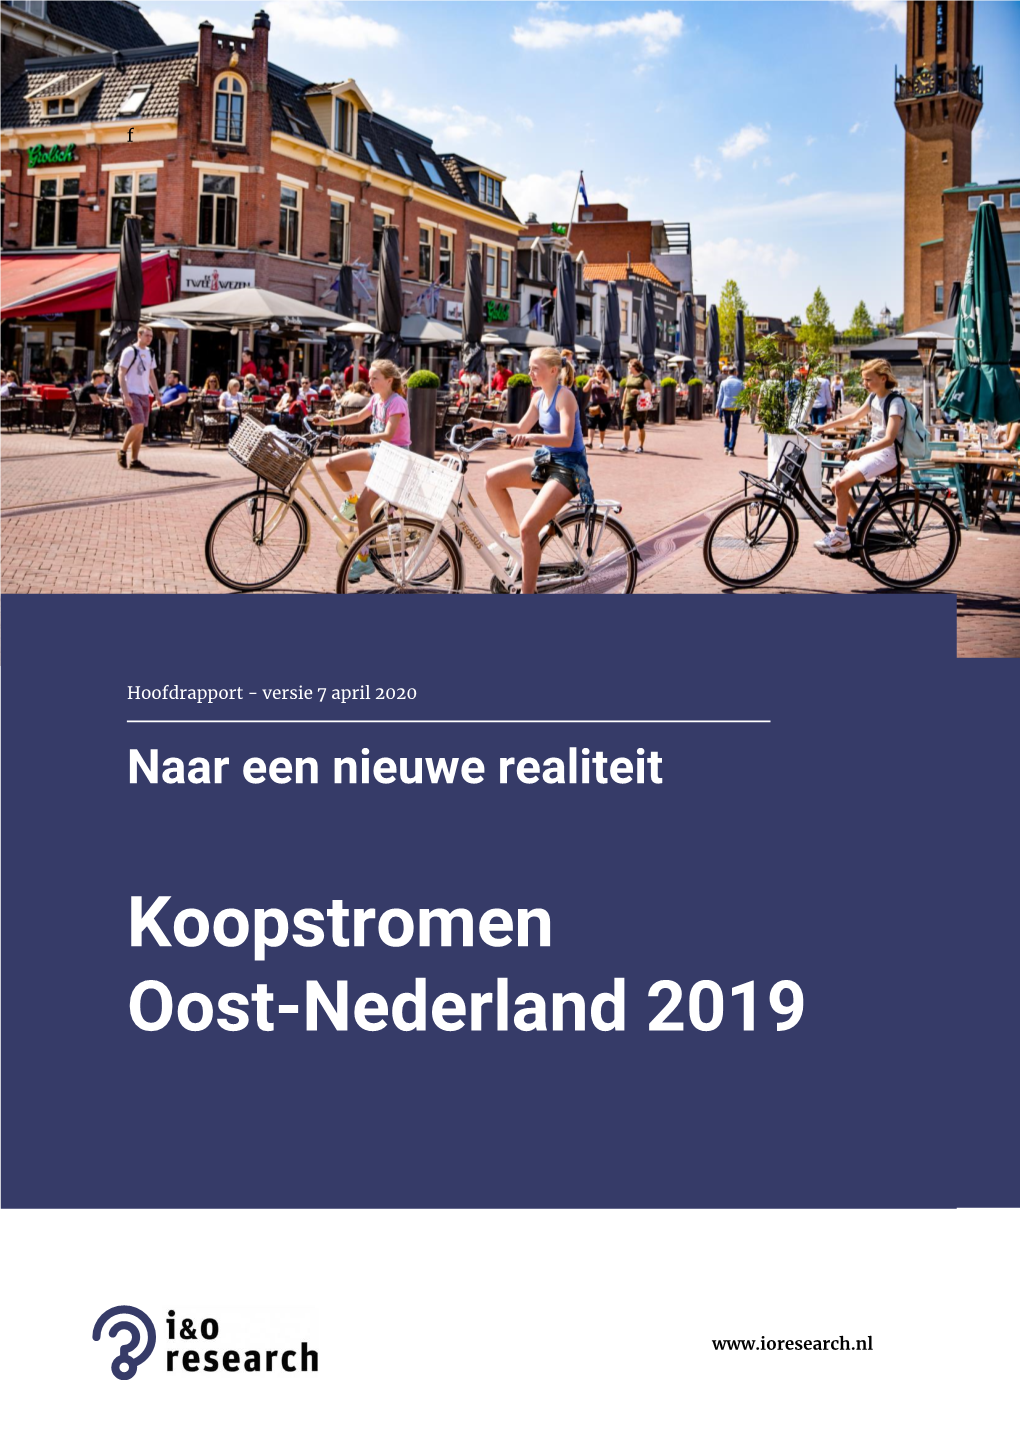 Koopstromen Oost-Nederland 2019